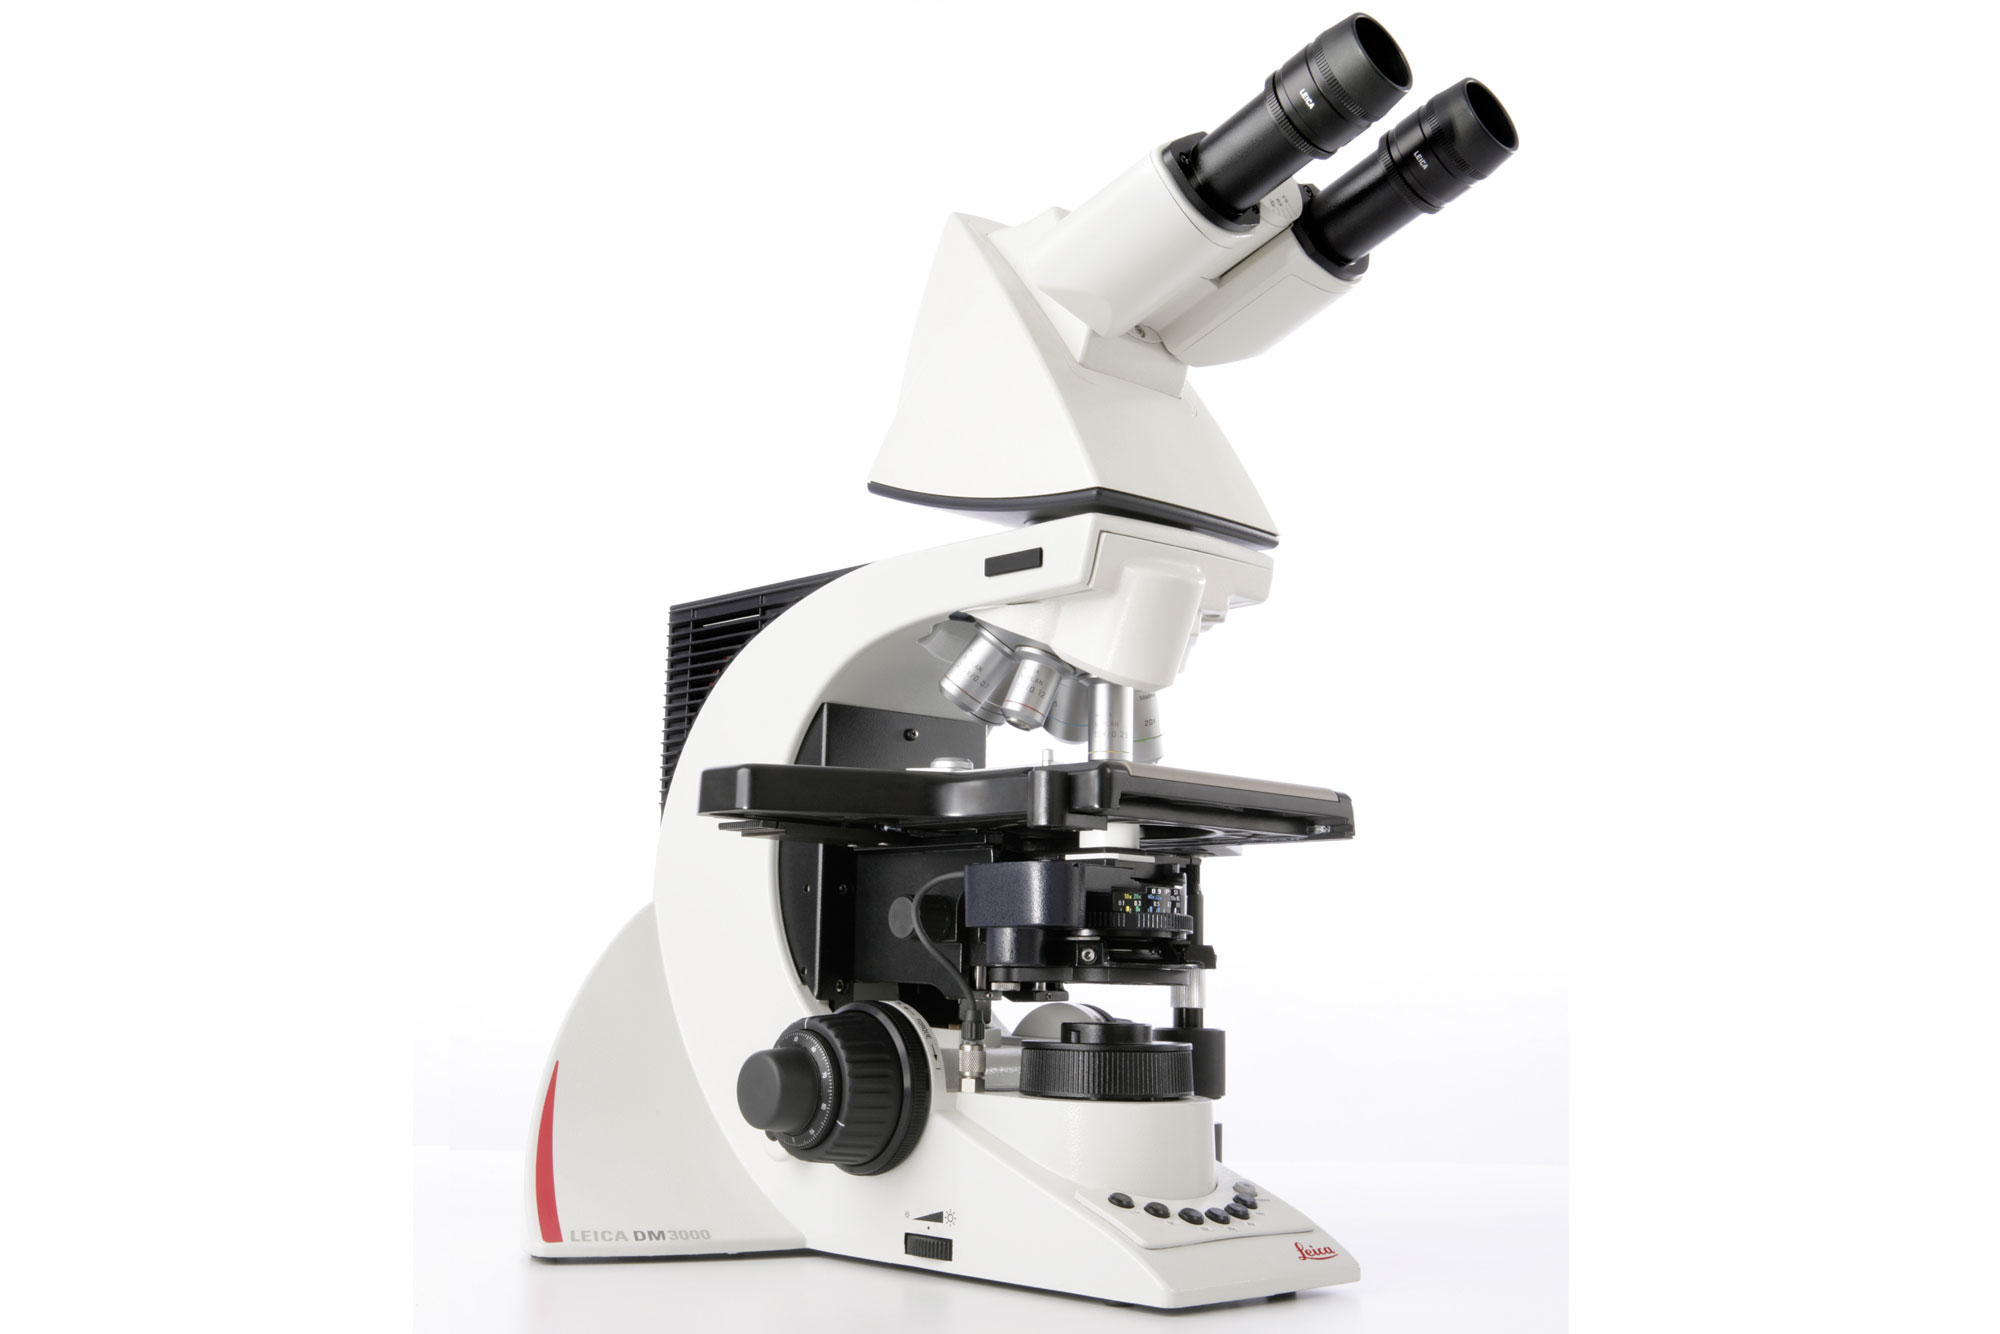 Das einzigartige, ergonomische Systemmikroskop Leica DM3000 ist dank seiner intelligenten Automation ideal für Anwendungen in Zytologie und Pathologie.